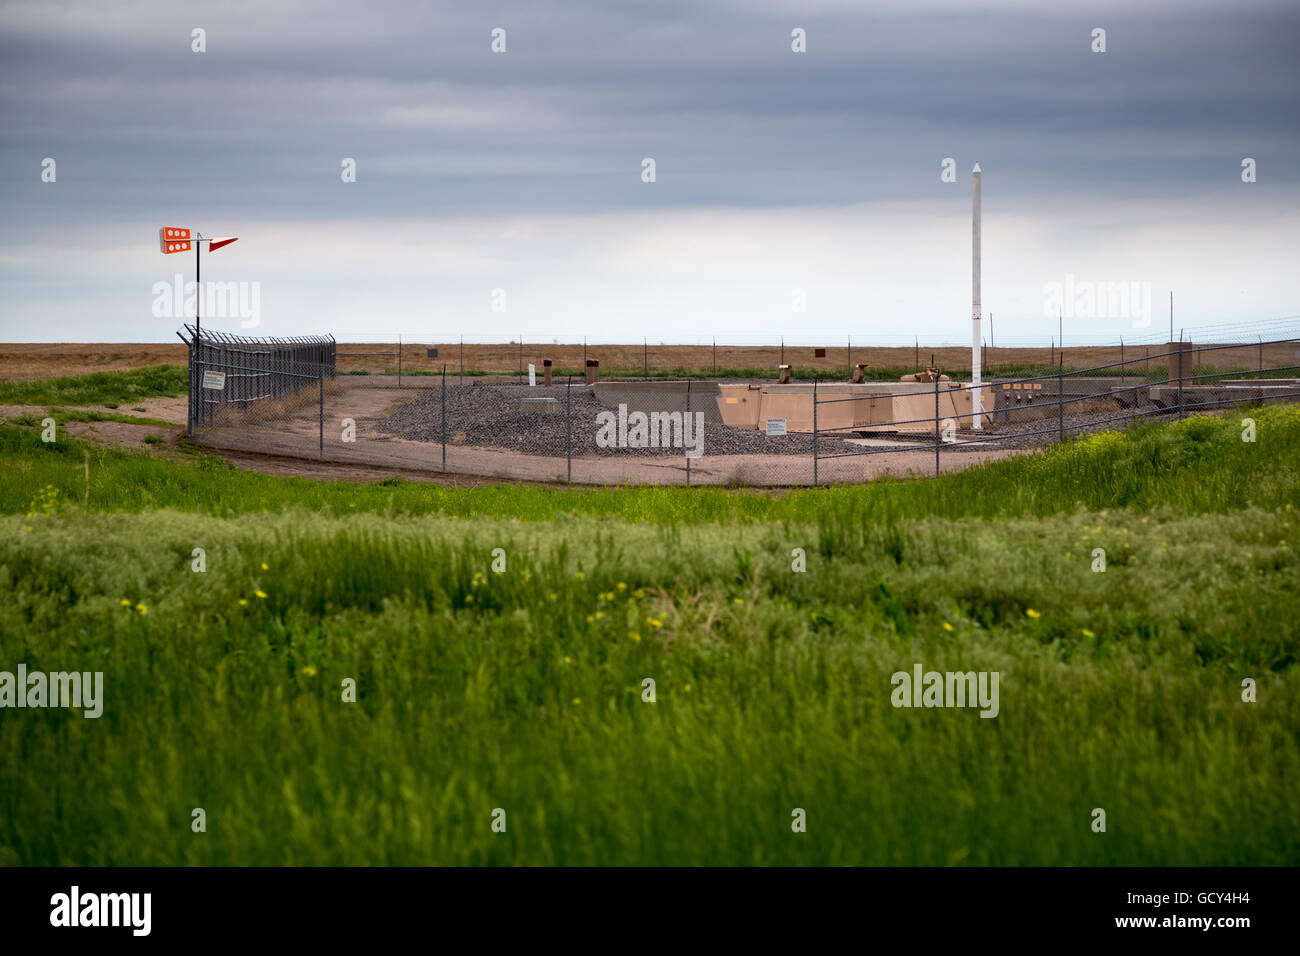 Un silo de misiles nucleares minuteman cerca gurley, Nebraska, 1 de junio de 2014. Foto de stock